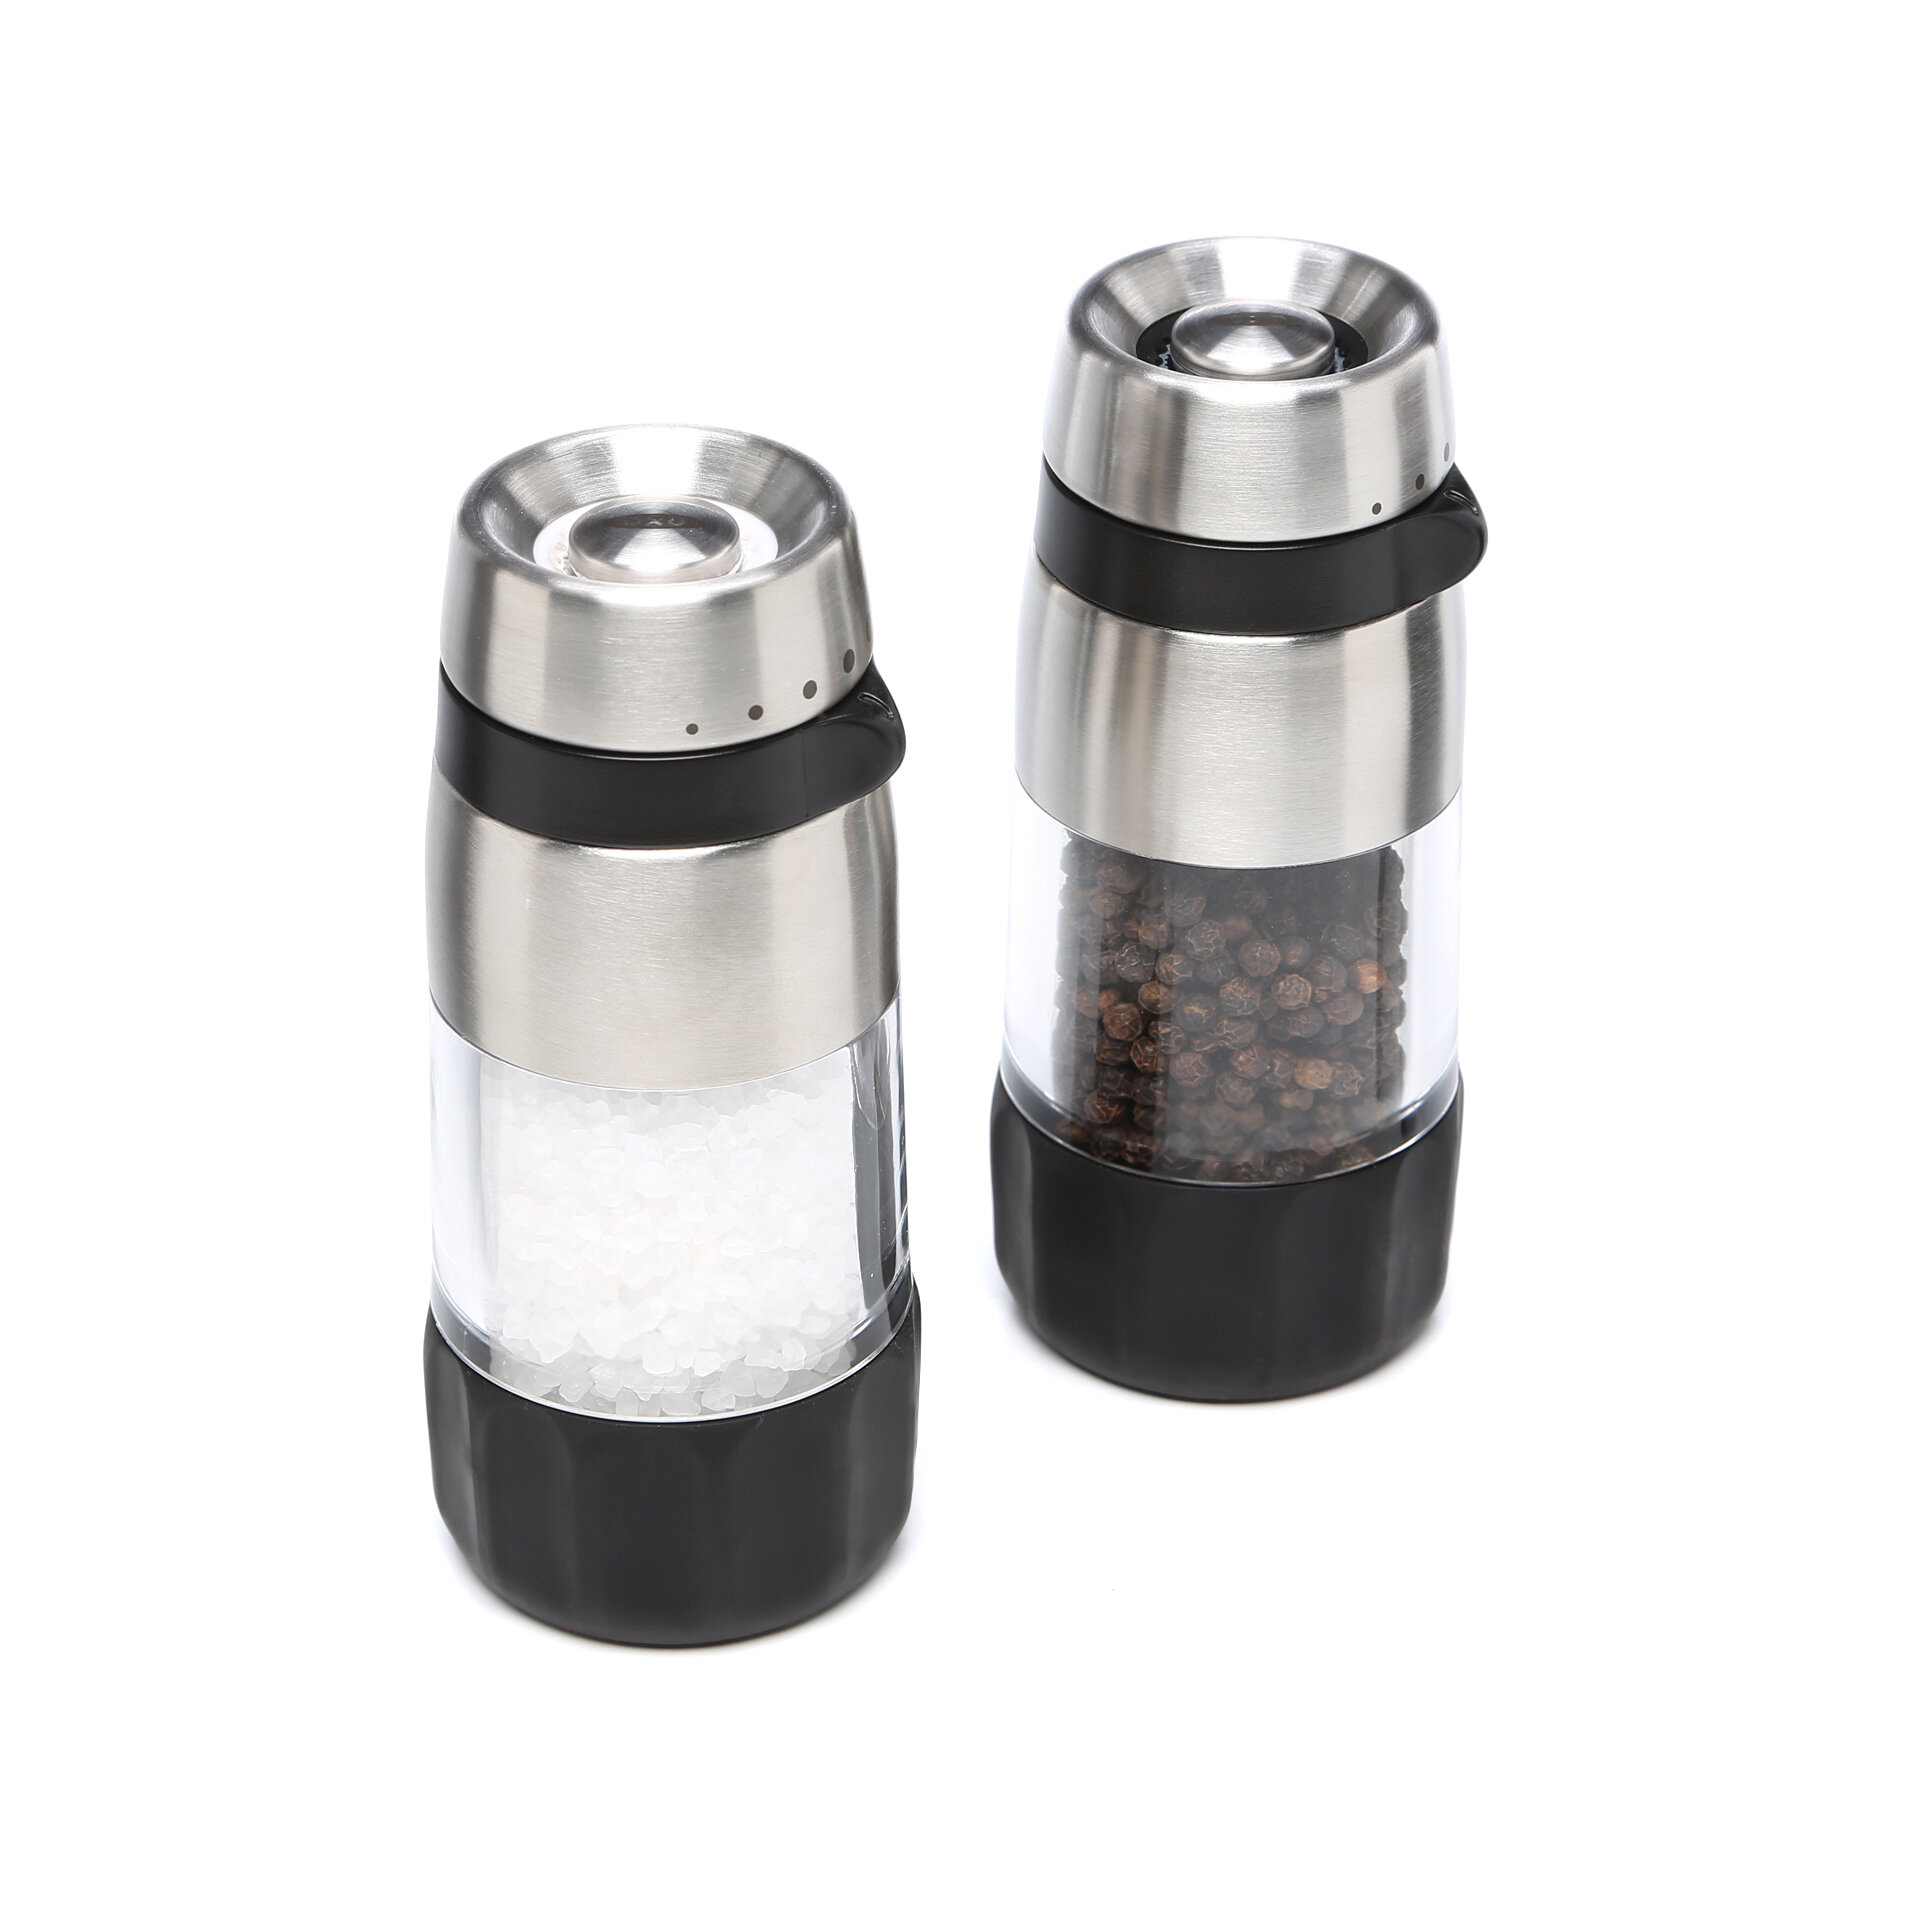 https://assets.wfcdn.com/im/33765139/compr-r85/8967/8967054/oxo-good-grips-accent-mess-free-salt-pepper-grinder-set.jpg